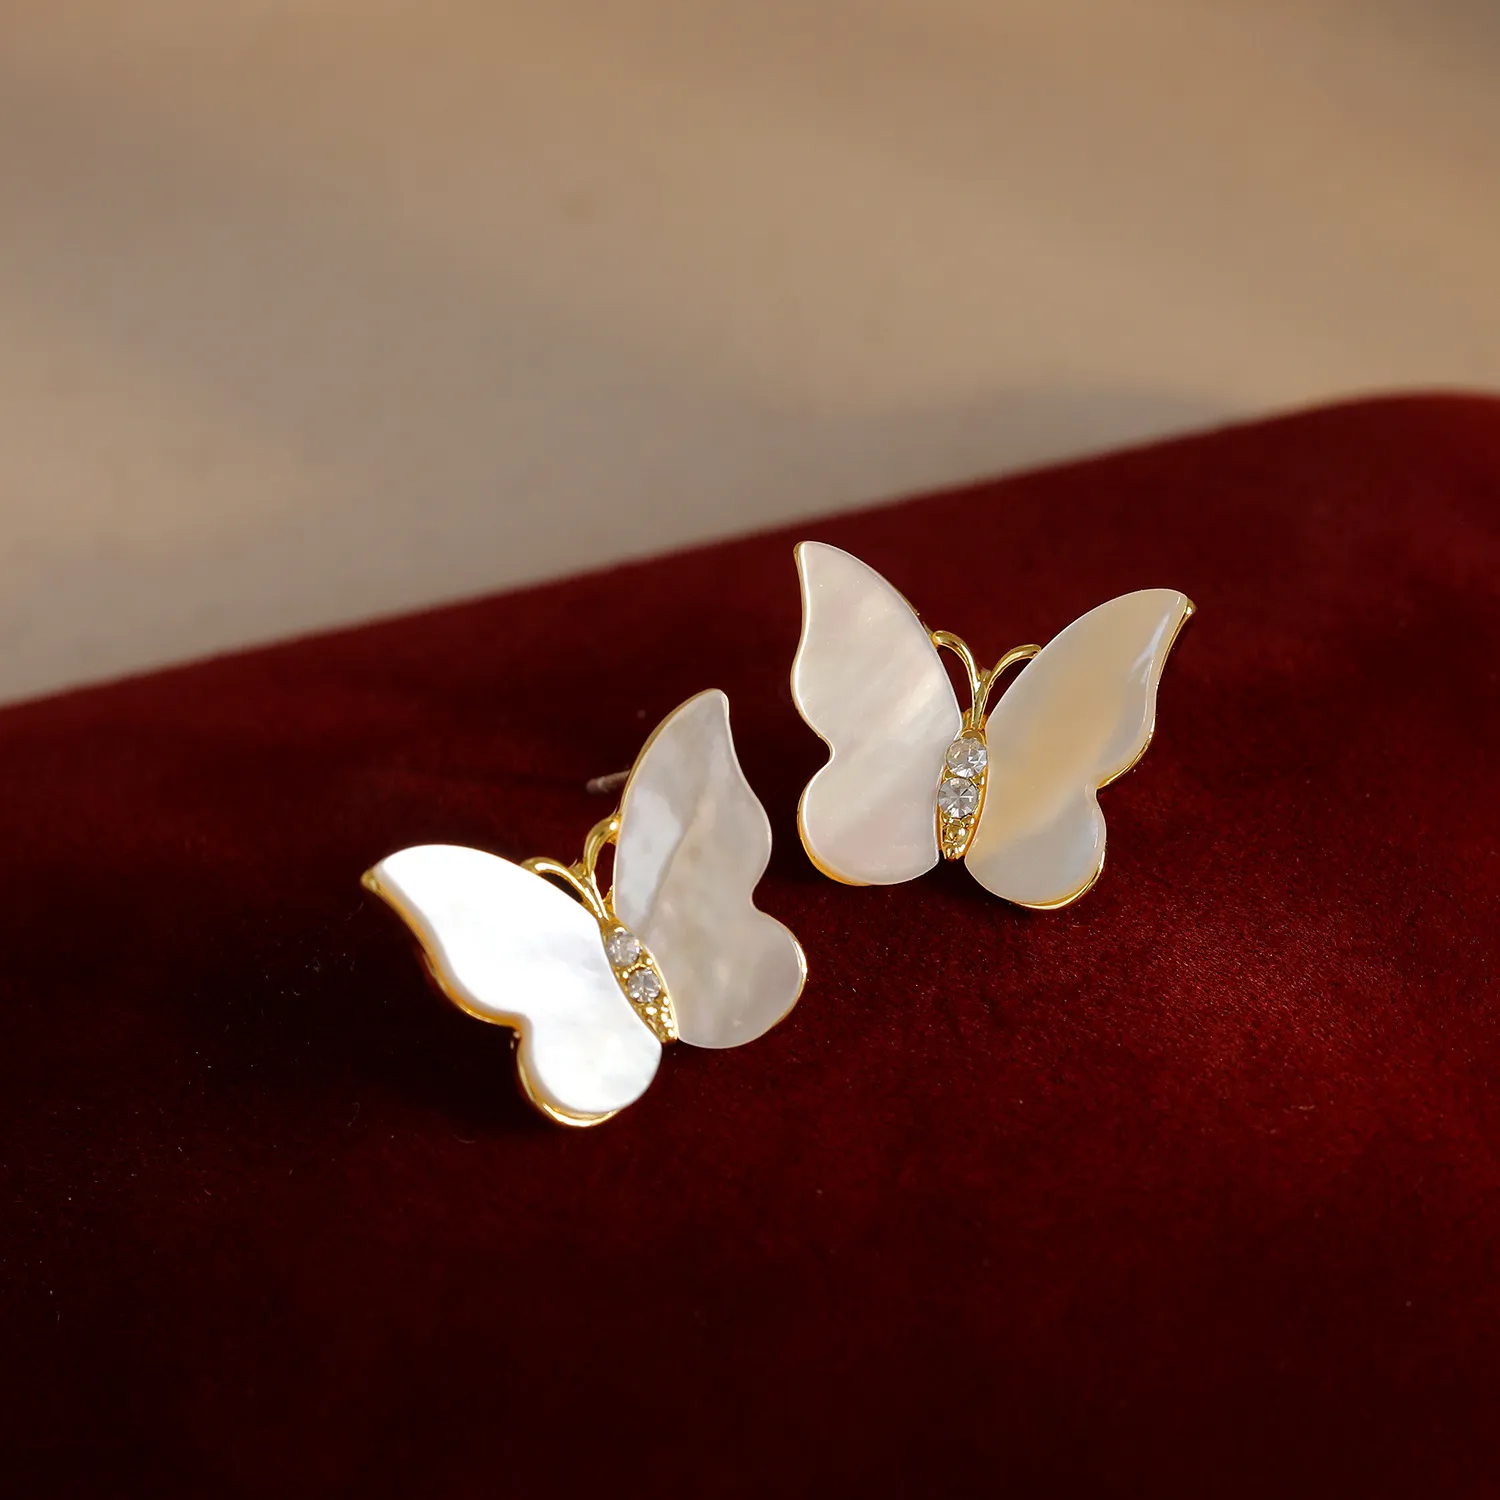 Nouvelles boucles d'oreilles à la mode S925 argent aiguille coquille blanche papillon boucles d'oreilles mode européenne américaine femmes boucles d'oreilles bijoux de fête de mariage cadeau de saint valentin SPC